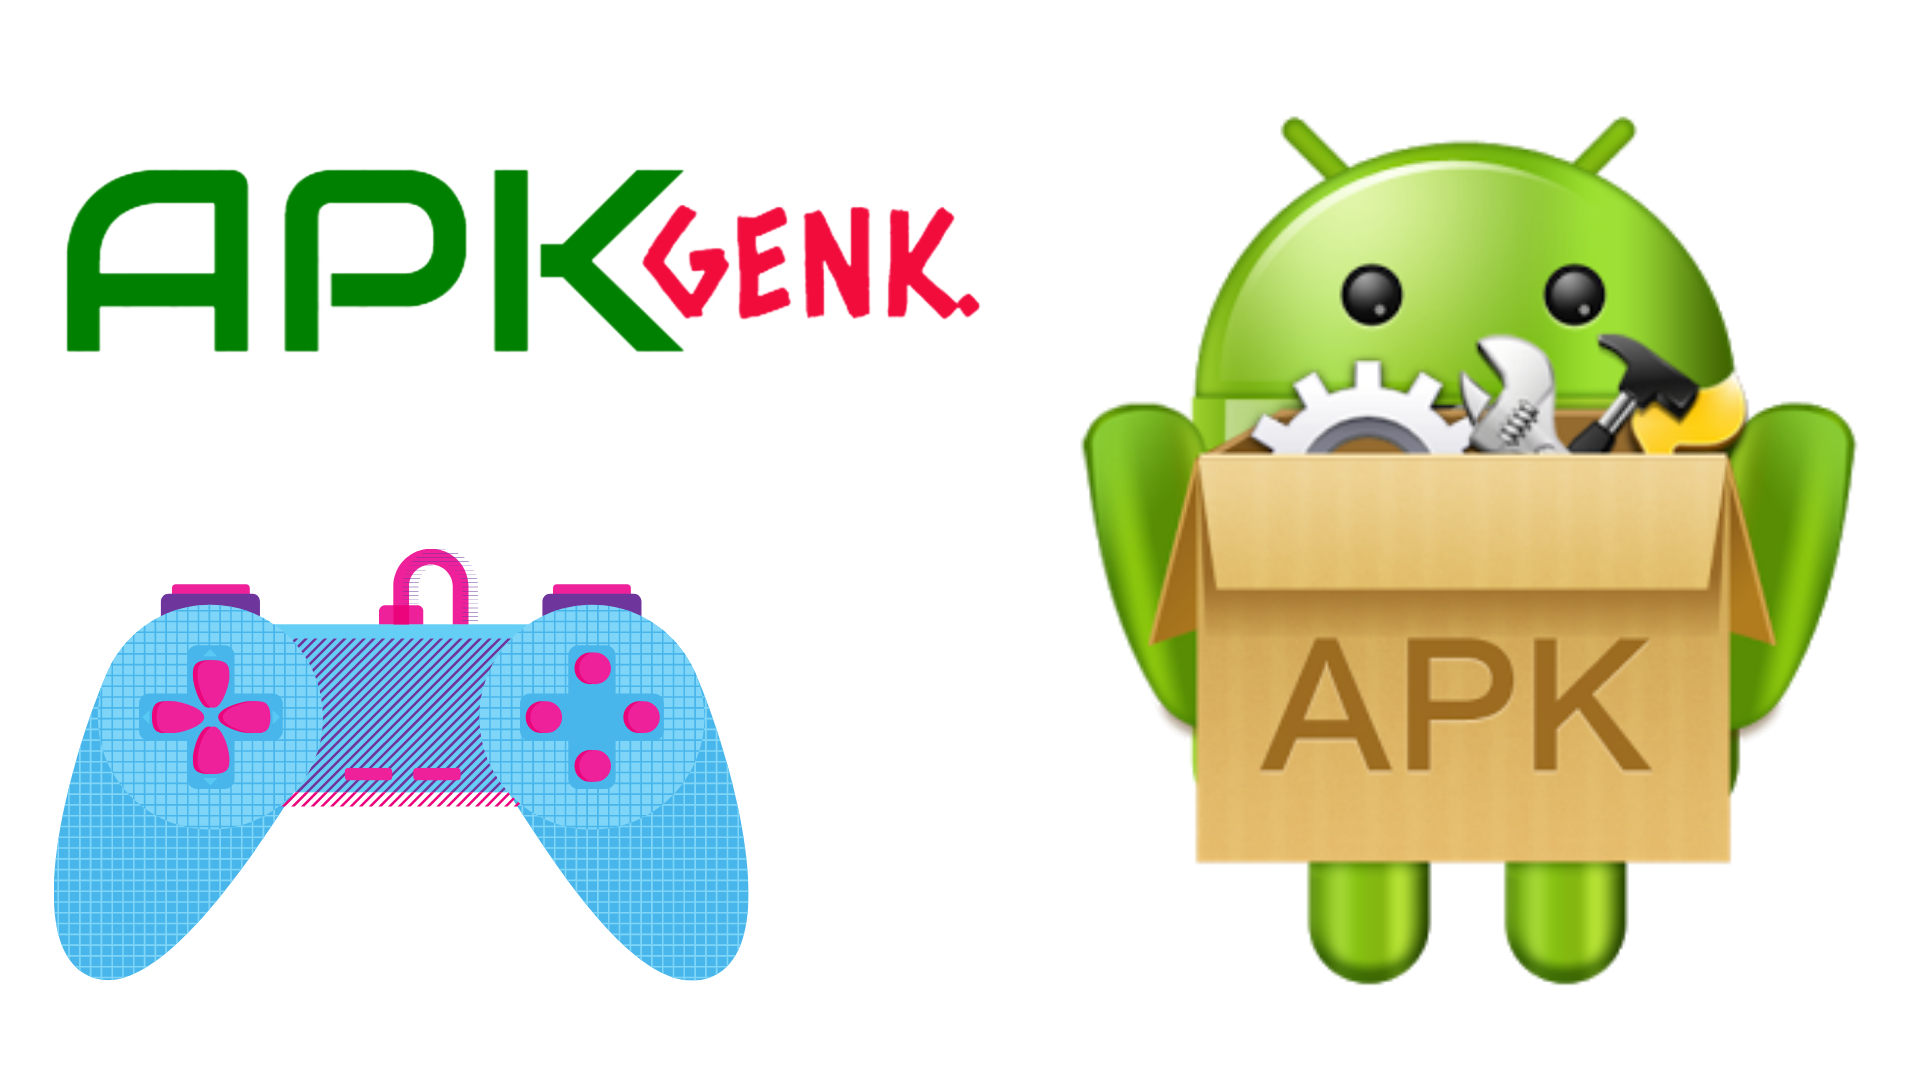 Apkgenk Reviews - 3 Reviews of Apkgenk.com